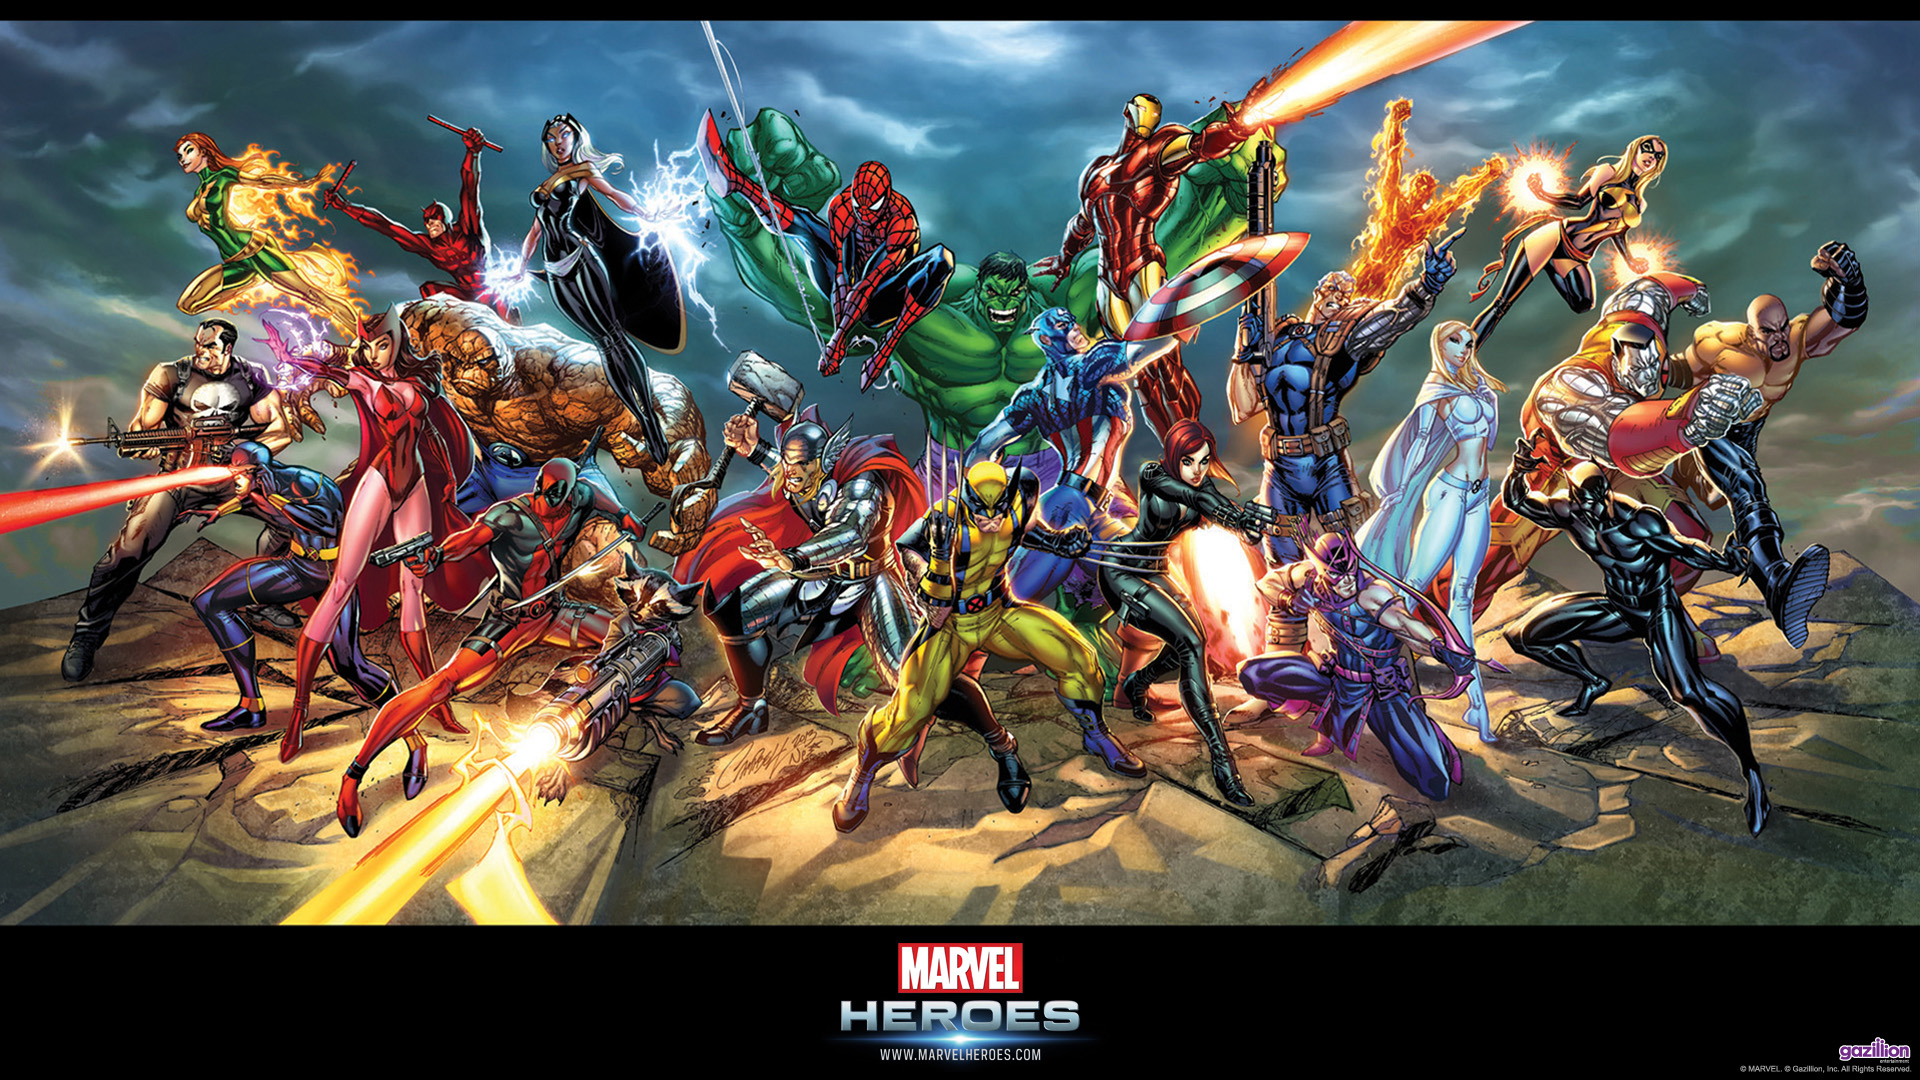 Marvel Superheroes Wallpaper HD - WallpaperSafari